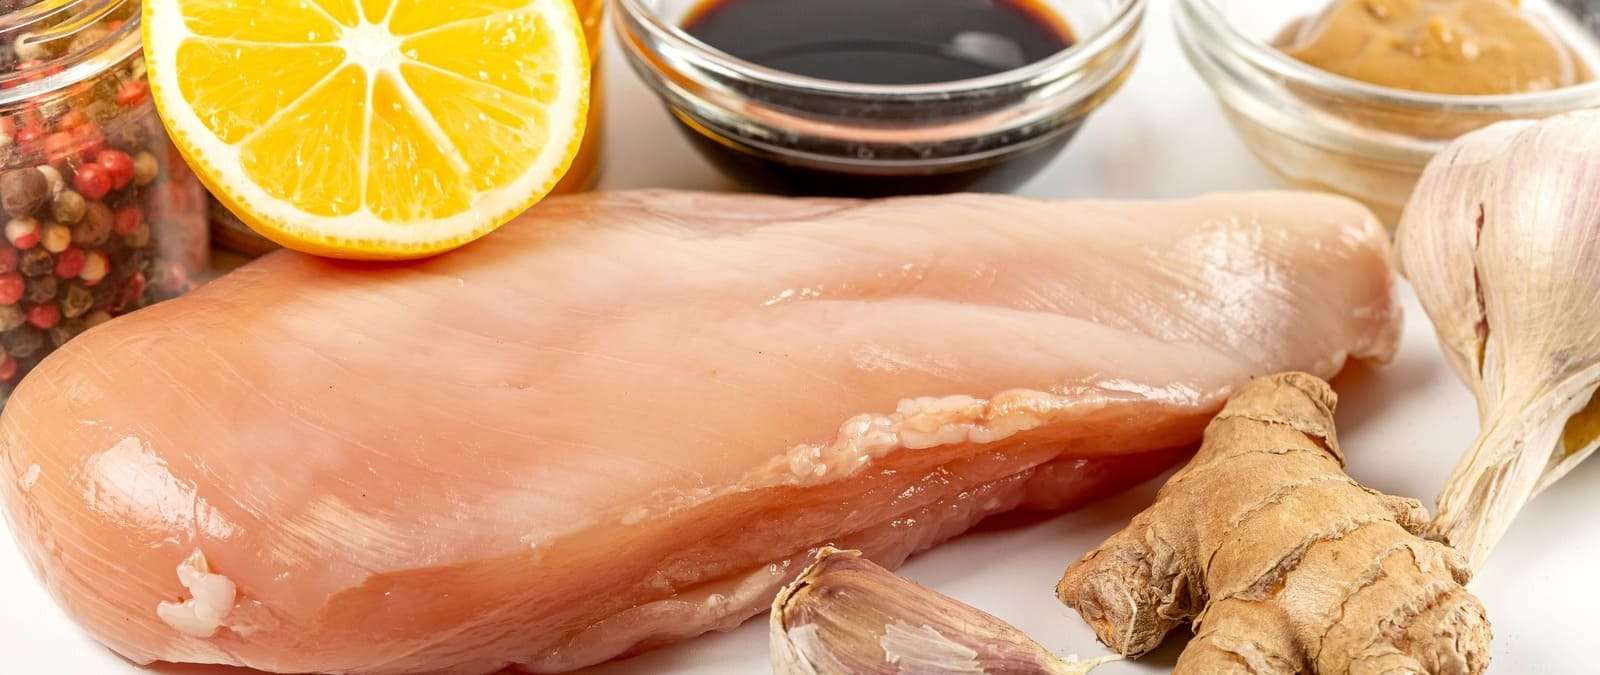 Por qué es un riesgo para la salud comer carne de pollo cruda ·   - Periodismo para que no te la cuelen